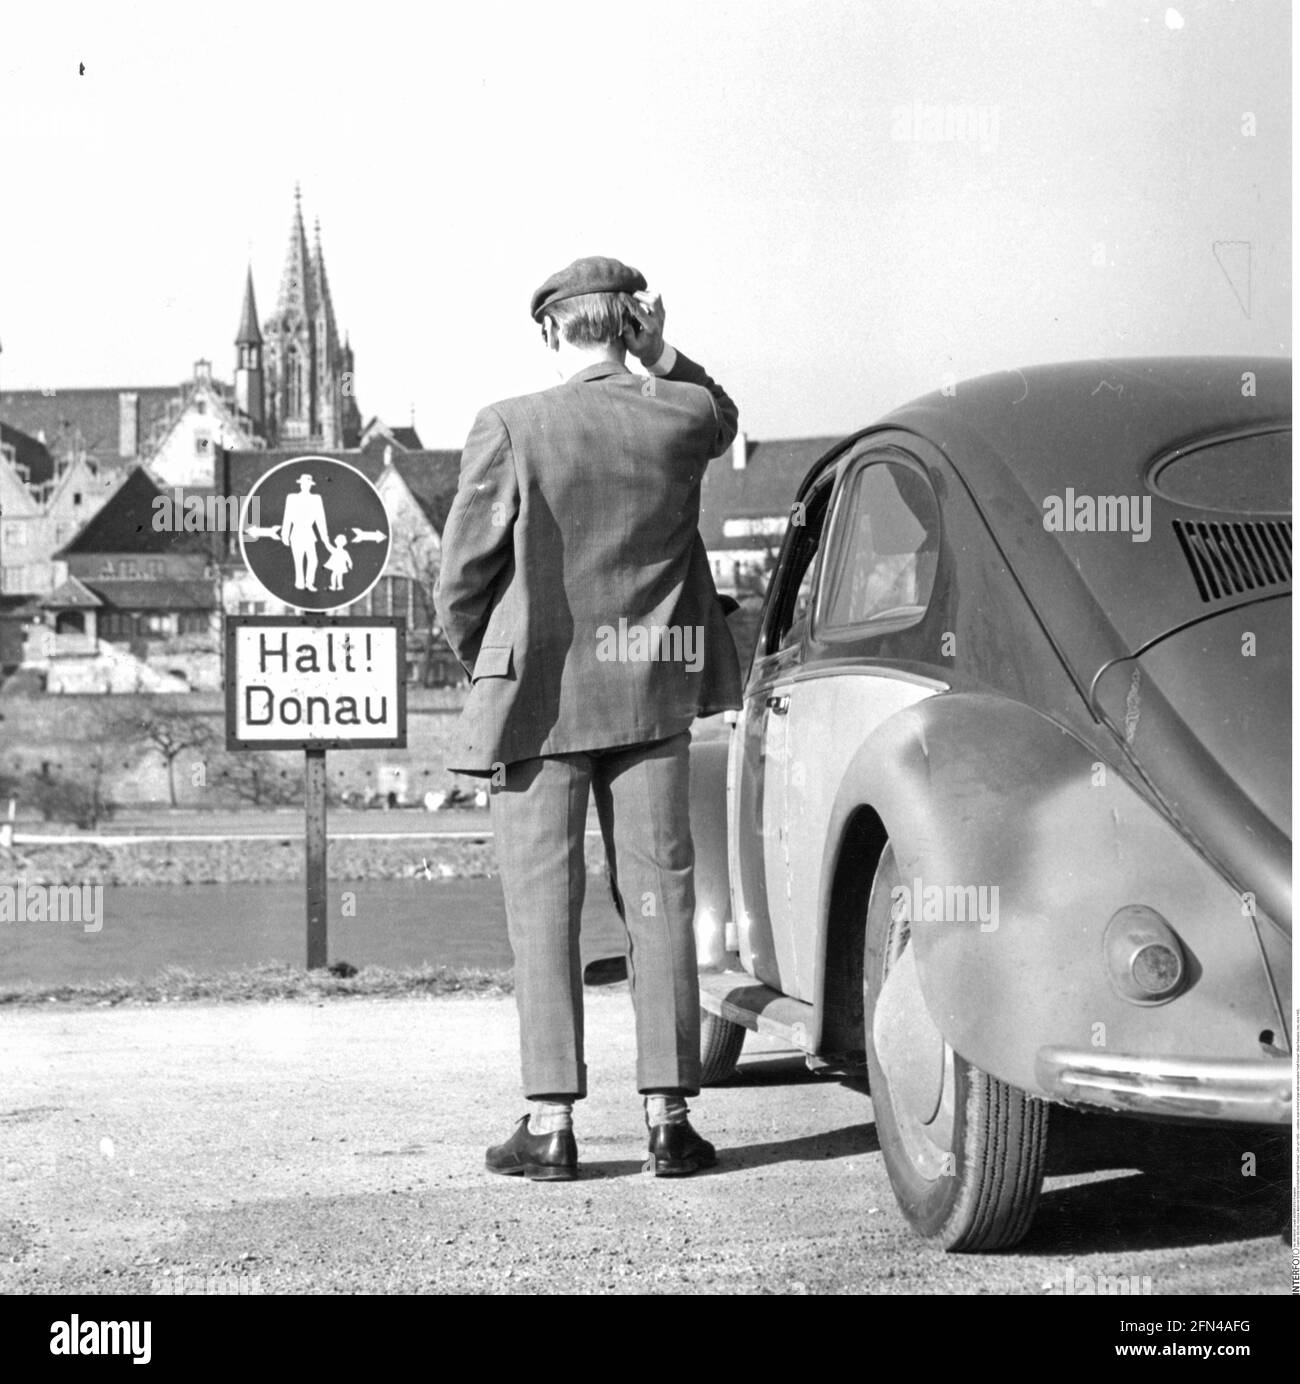 Oddities, homme devant le signe avec l'inscription 'Halt! Donau' (arrêt ! Danube), Ulm, vers 1950, INFO-AUTORISATION-DROITS-SUPPLÉMENTAIRES-NON-DISPONIBLE Banque D'Images